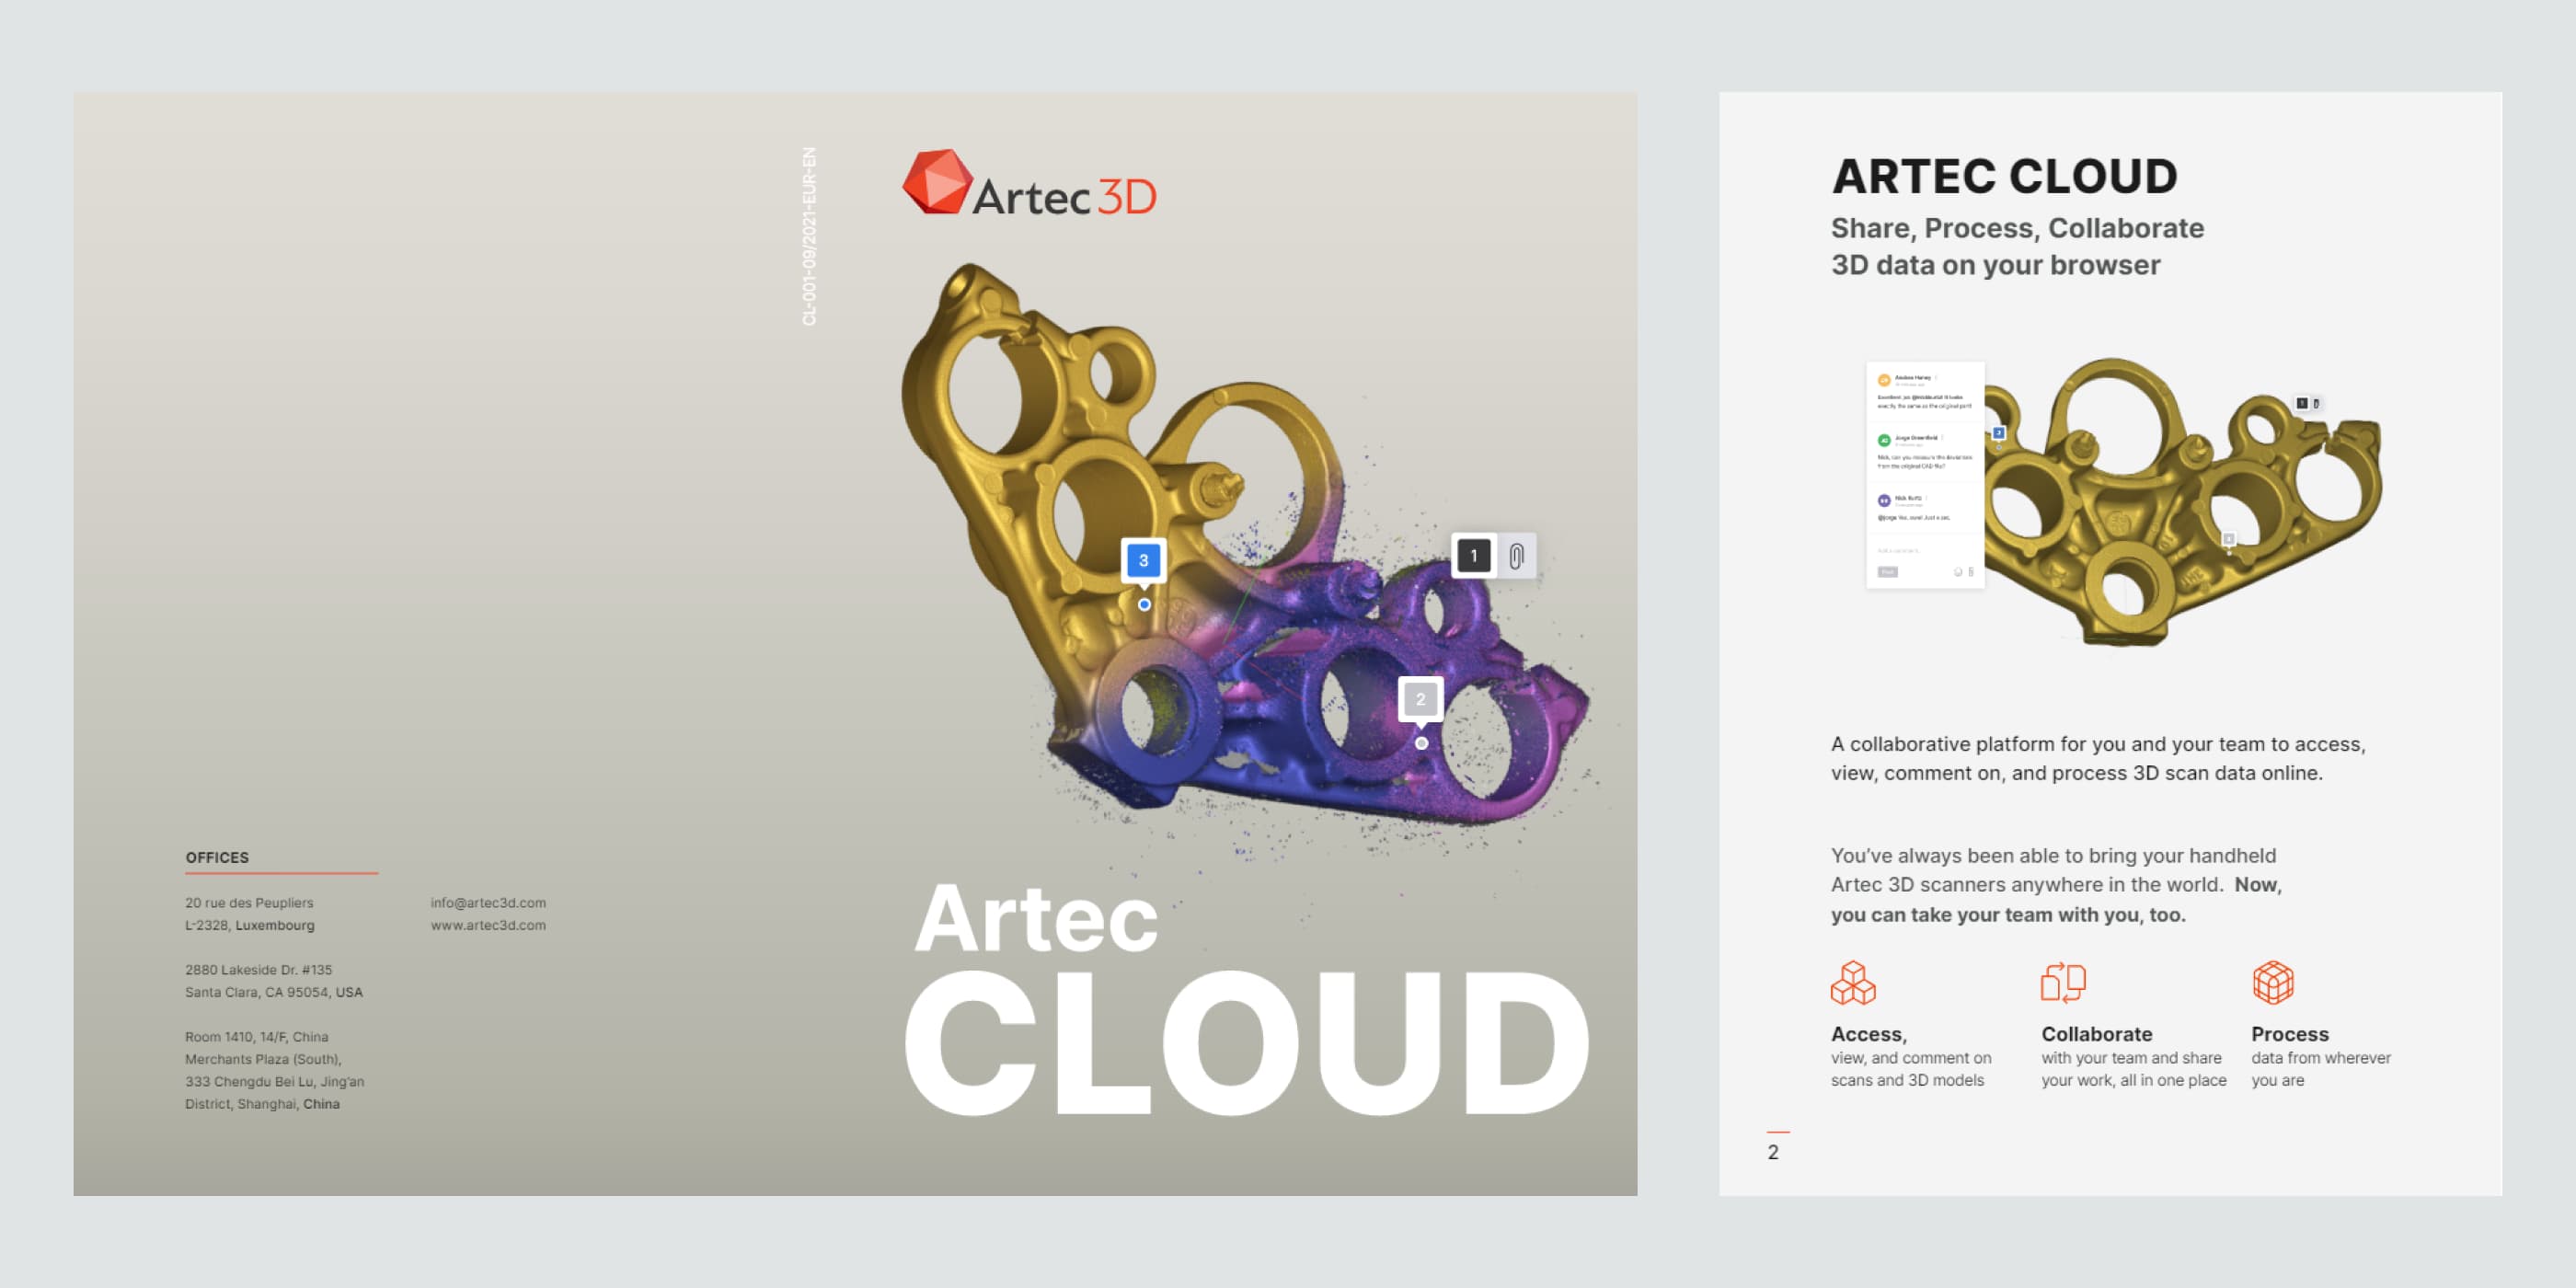 Artec 3D Cloud